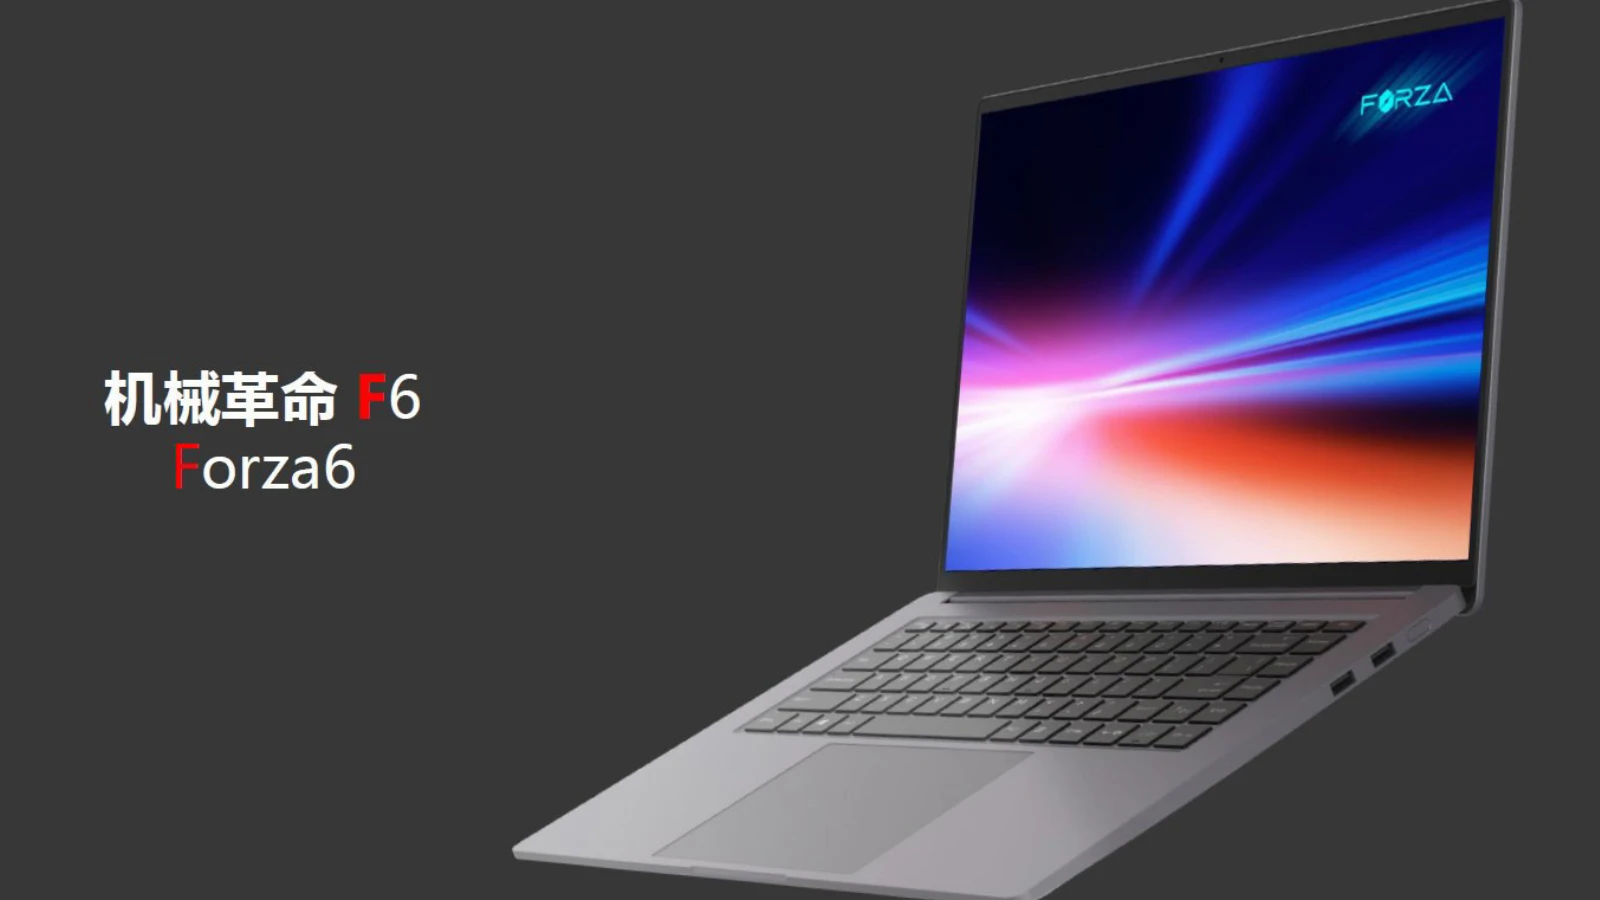 Mechanical Revolution представляет новый тонкий и легкий ноутбук F6